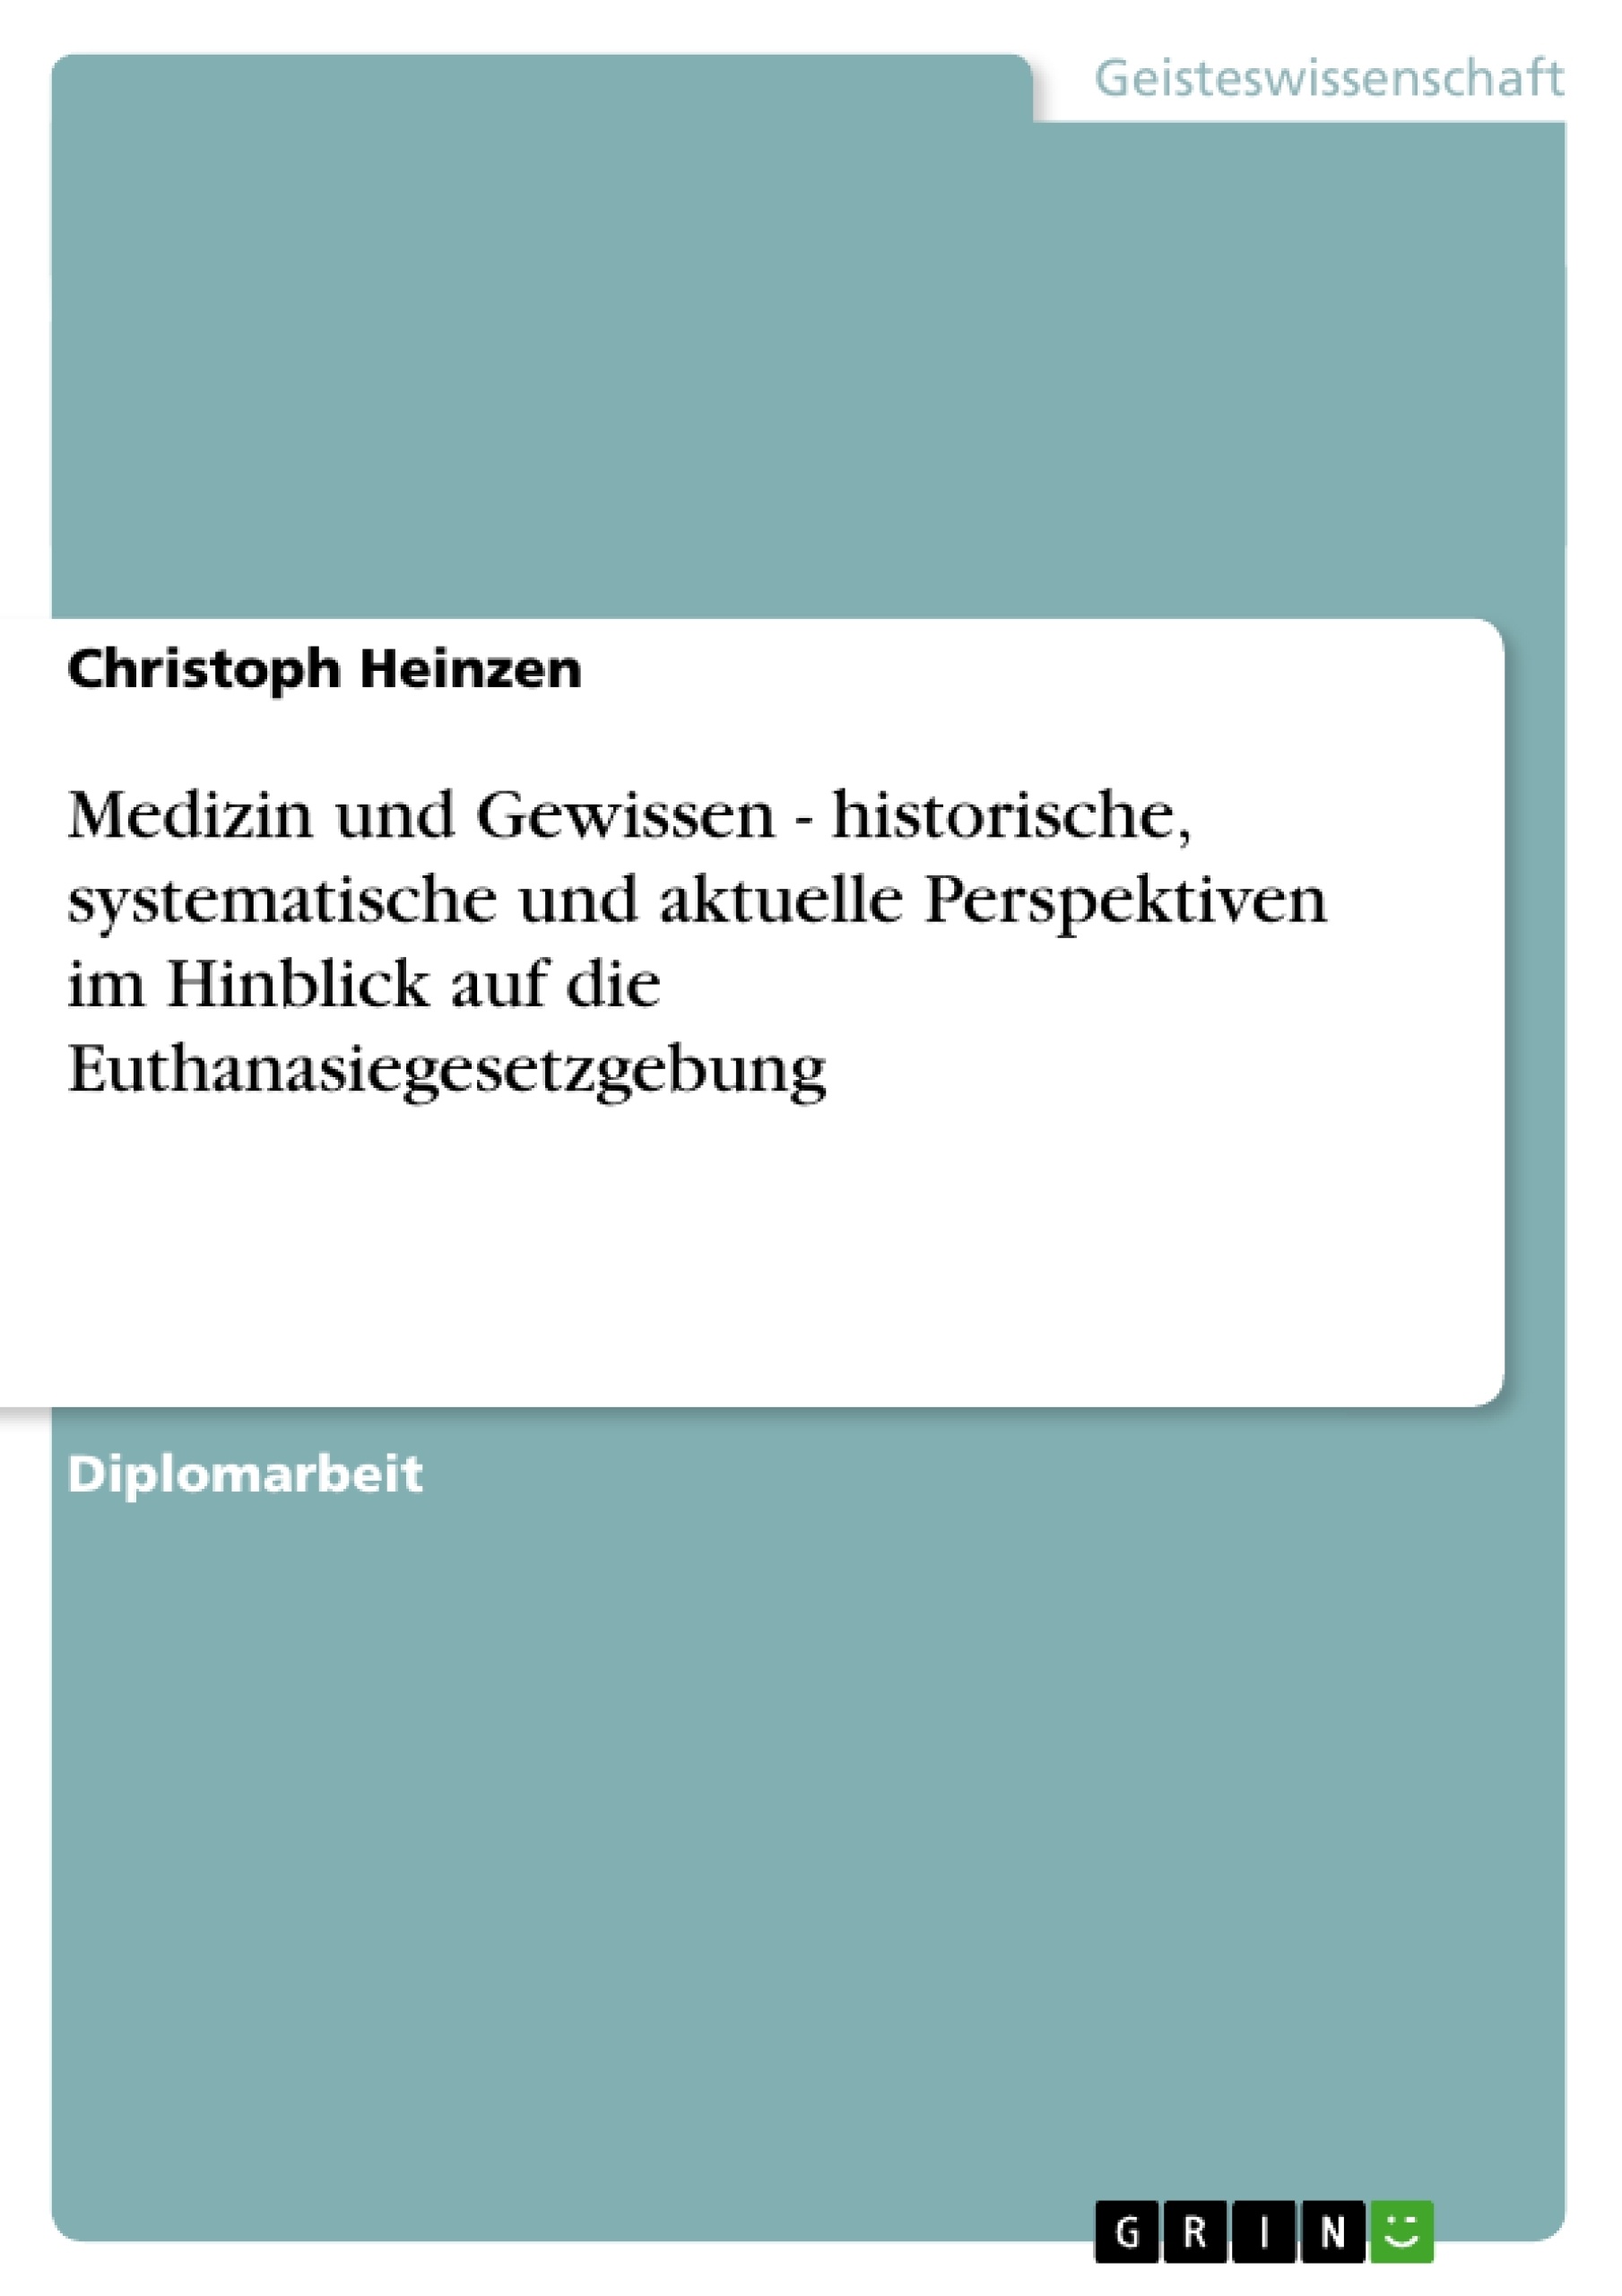 Título: Medizin und Gewissen  - historische, systematische und aktuelle Perspektiven im Hinblick auf die Euthanasiegesetzgebung